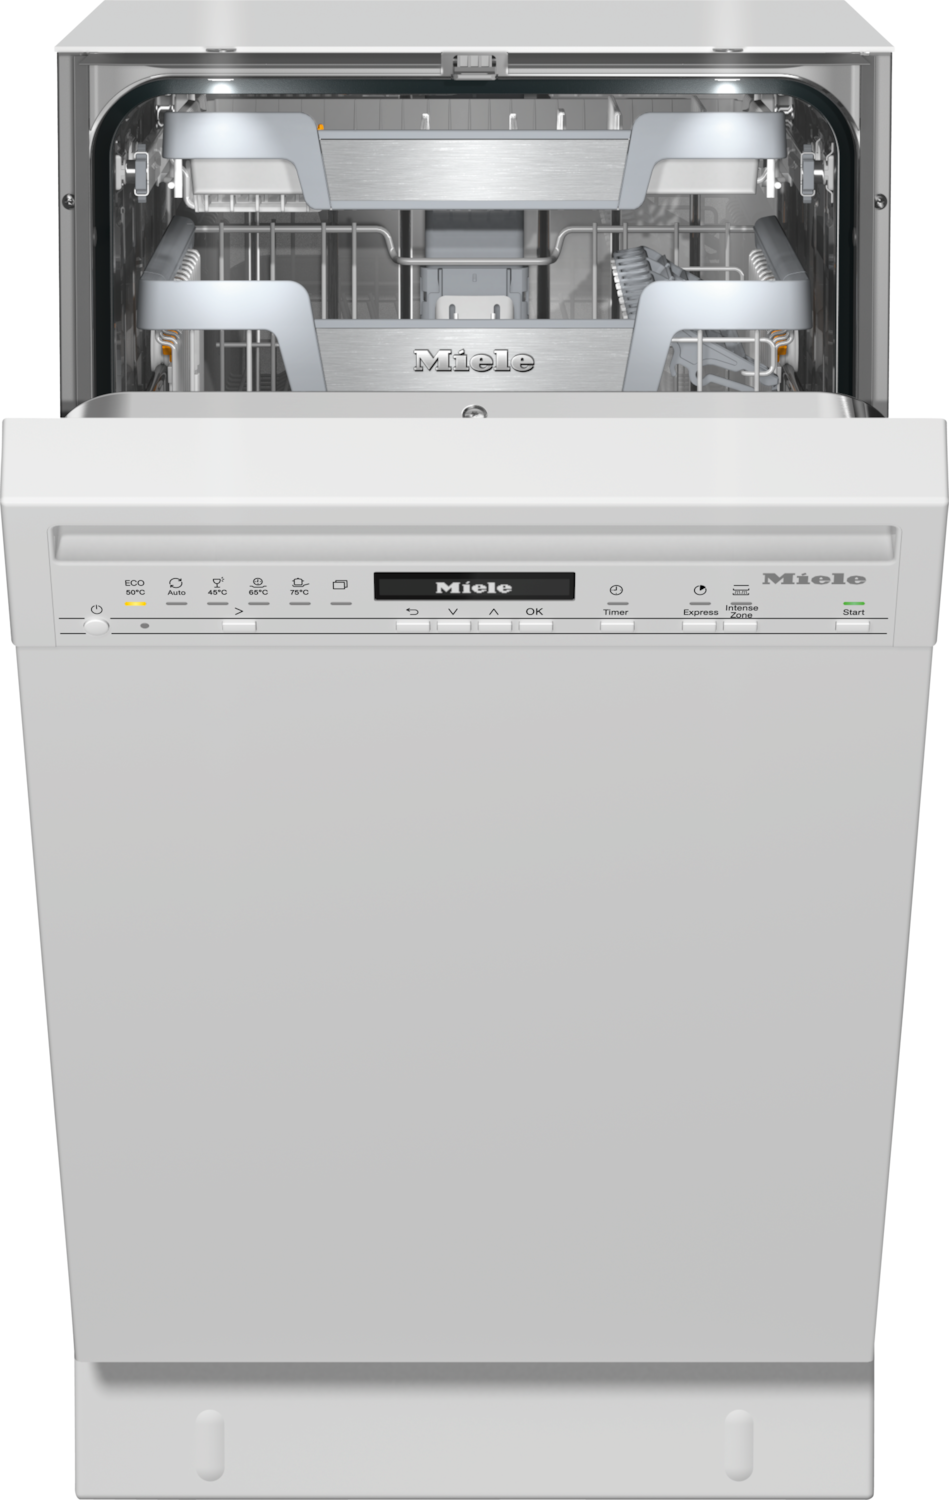 食器洗い機 G 5844 SCU （ホワイト/45cm）(送料27500込) product photo Front View ZOOM